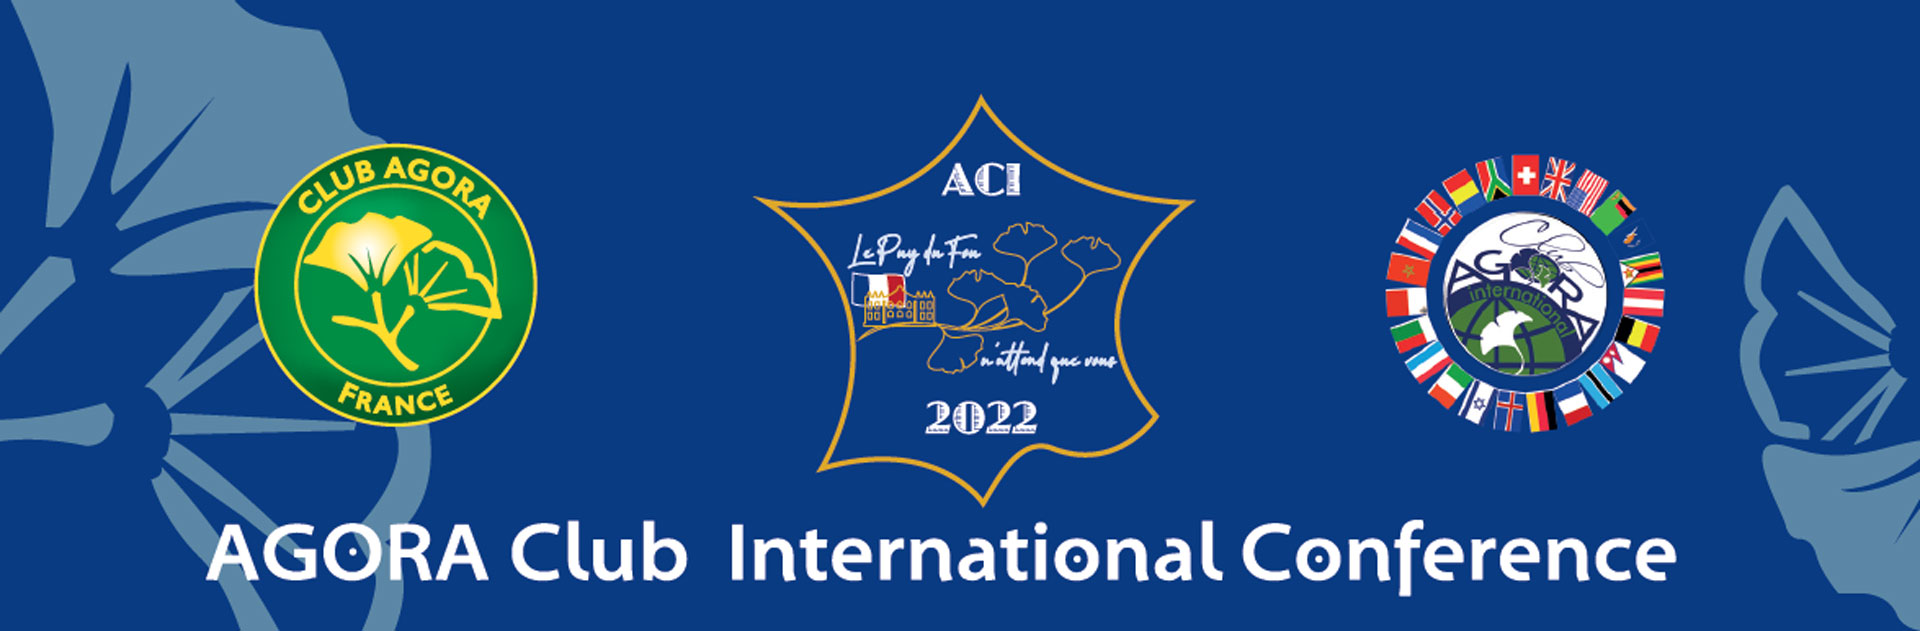 Site Agora Club International Conférence